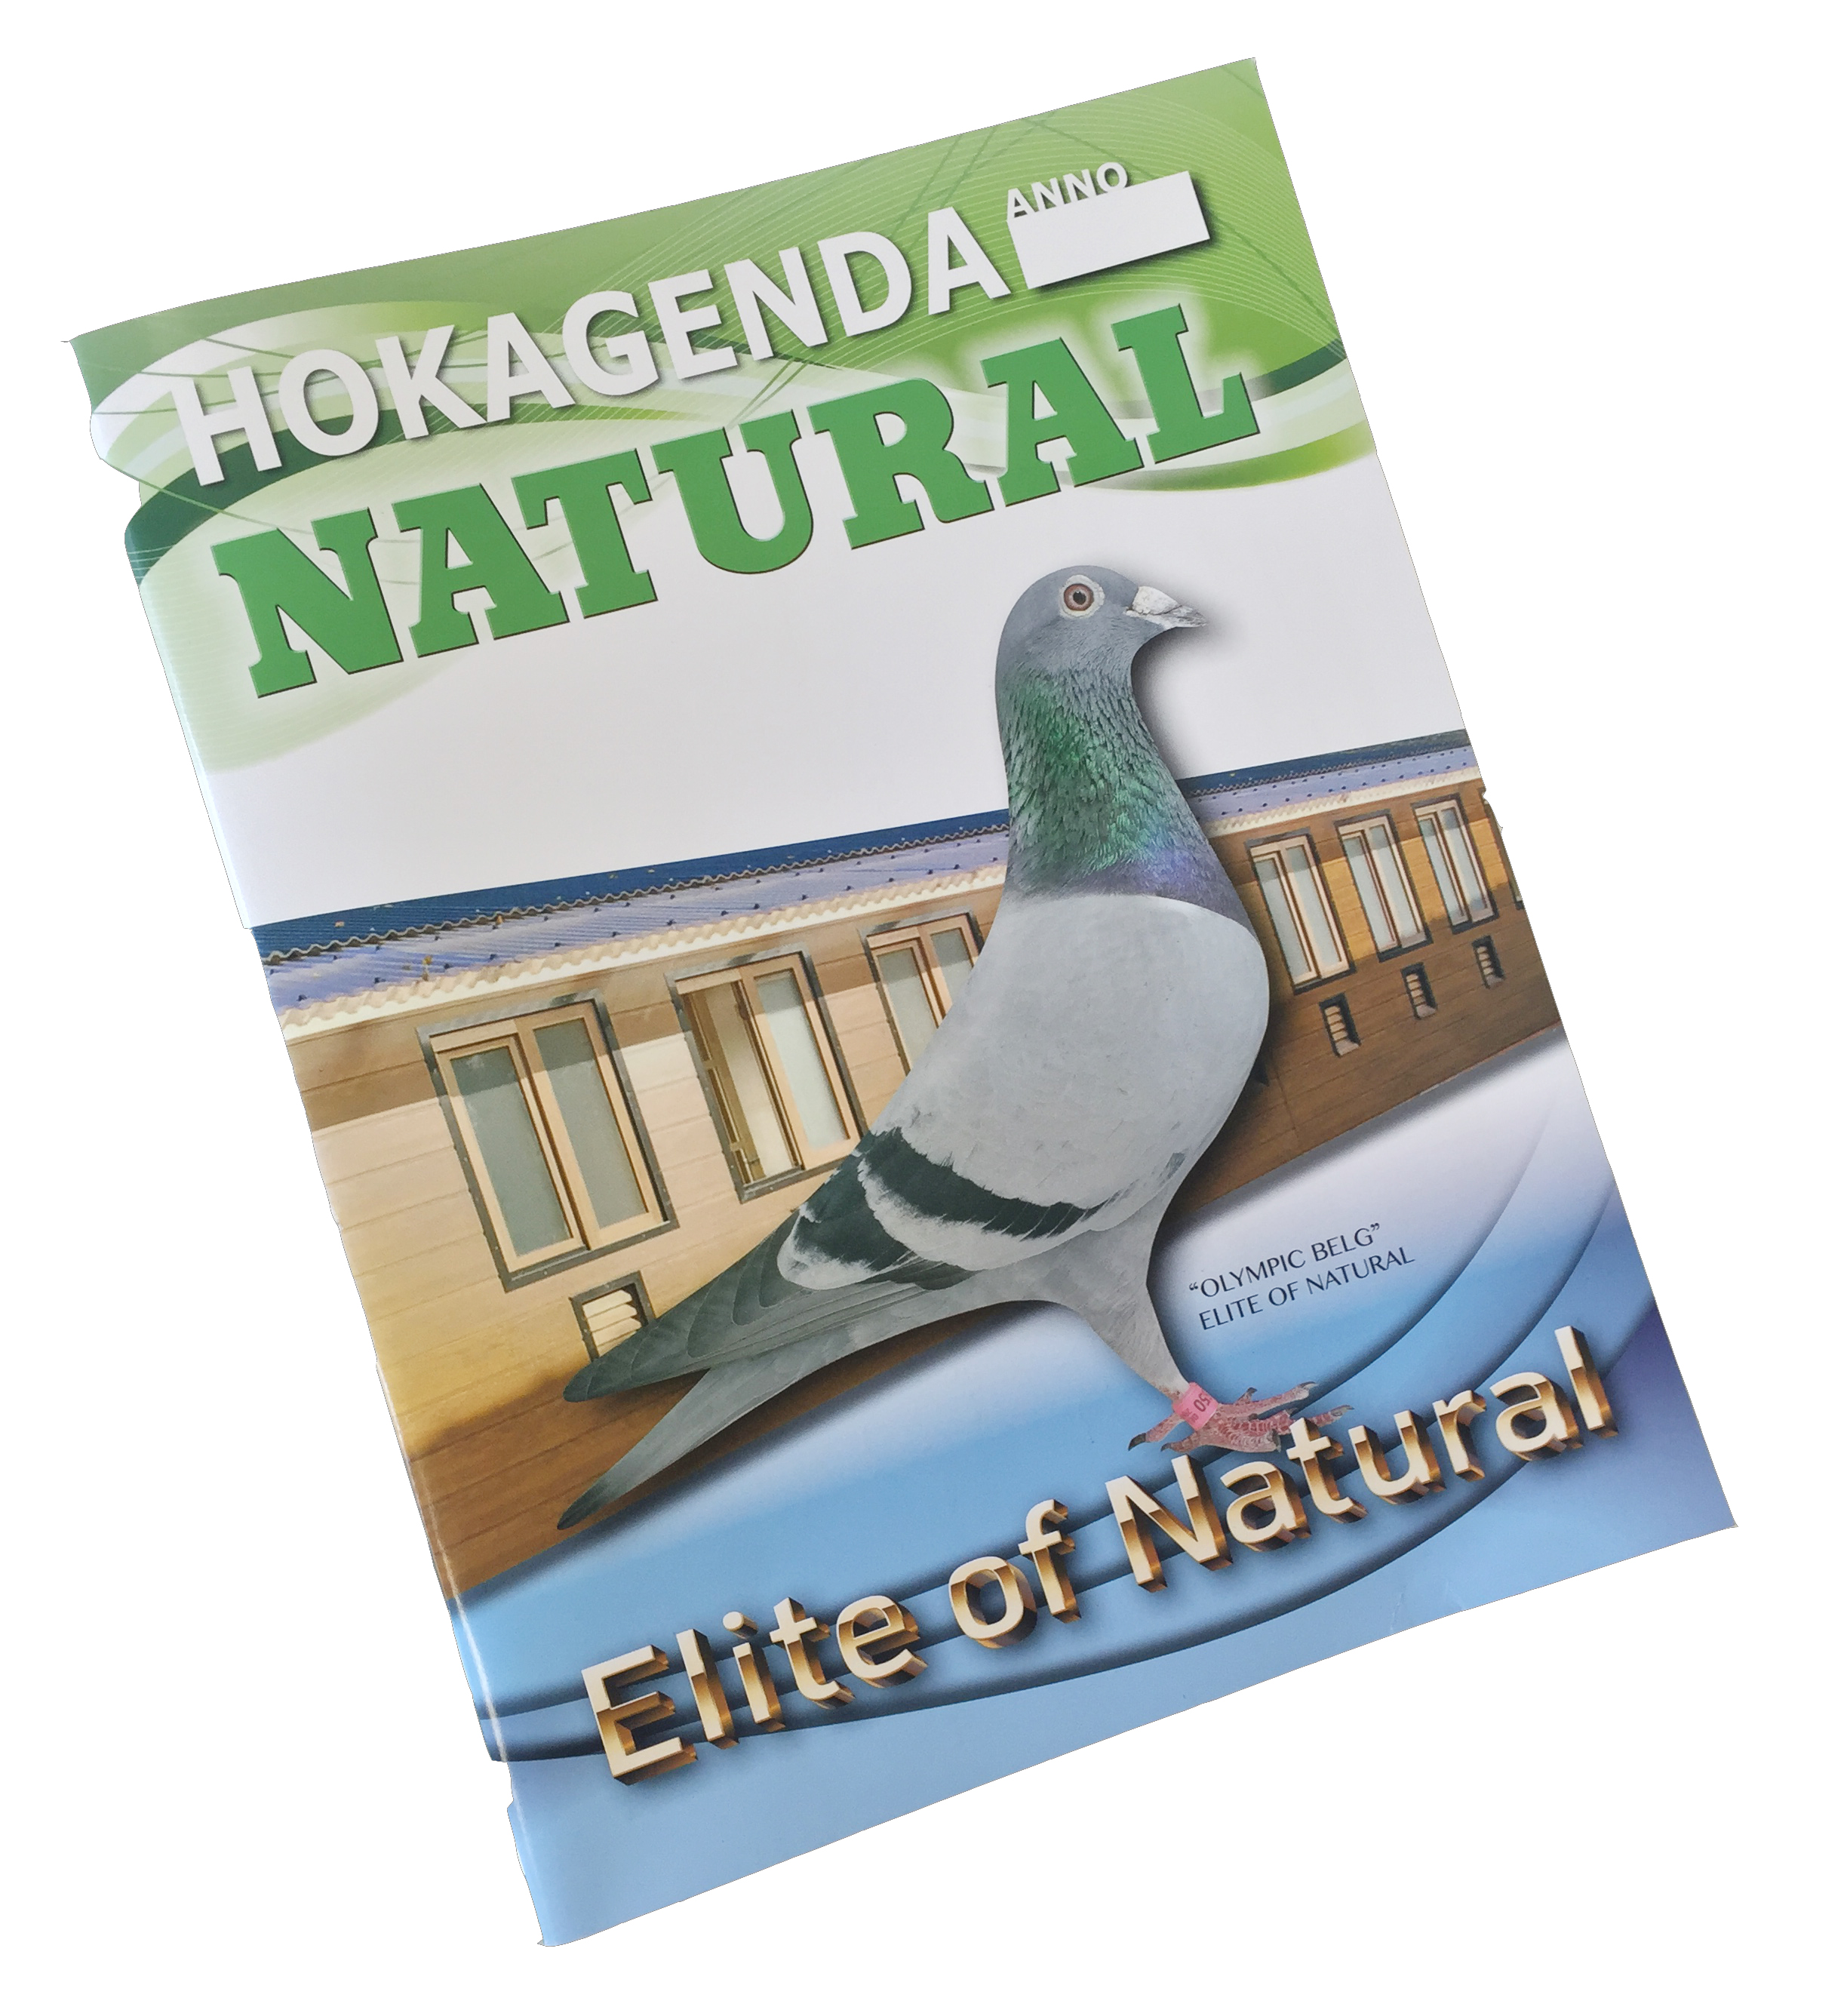 Natural duivendagboek nederlandstalig - Product shot